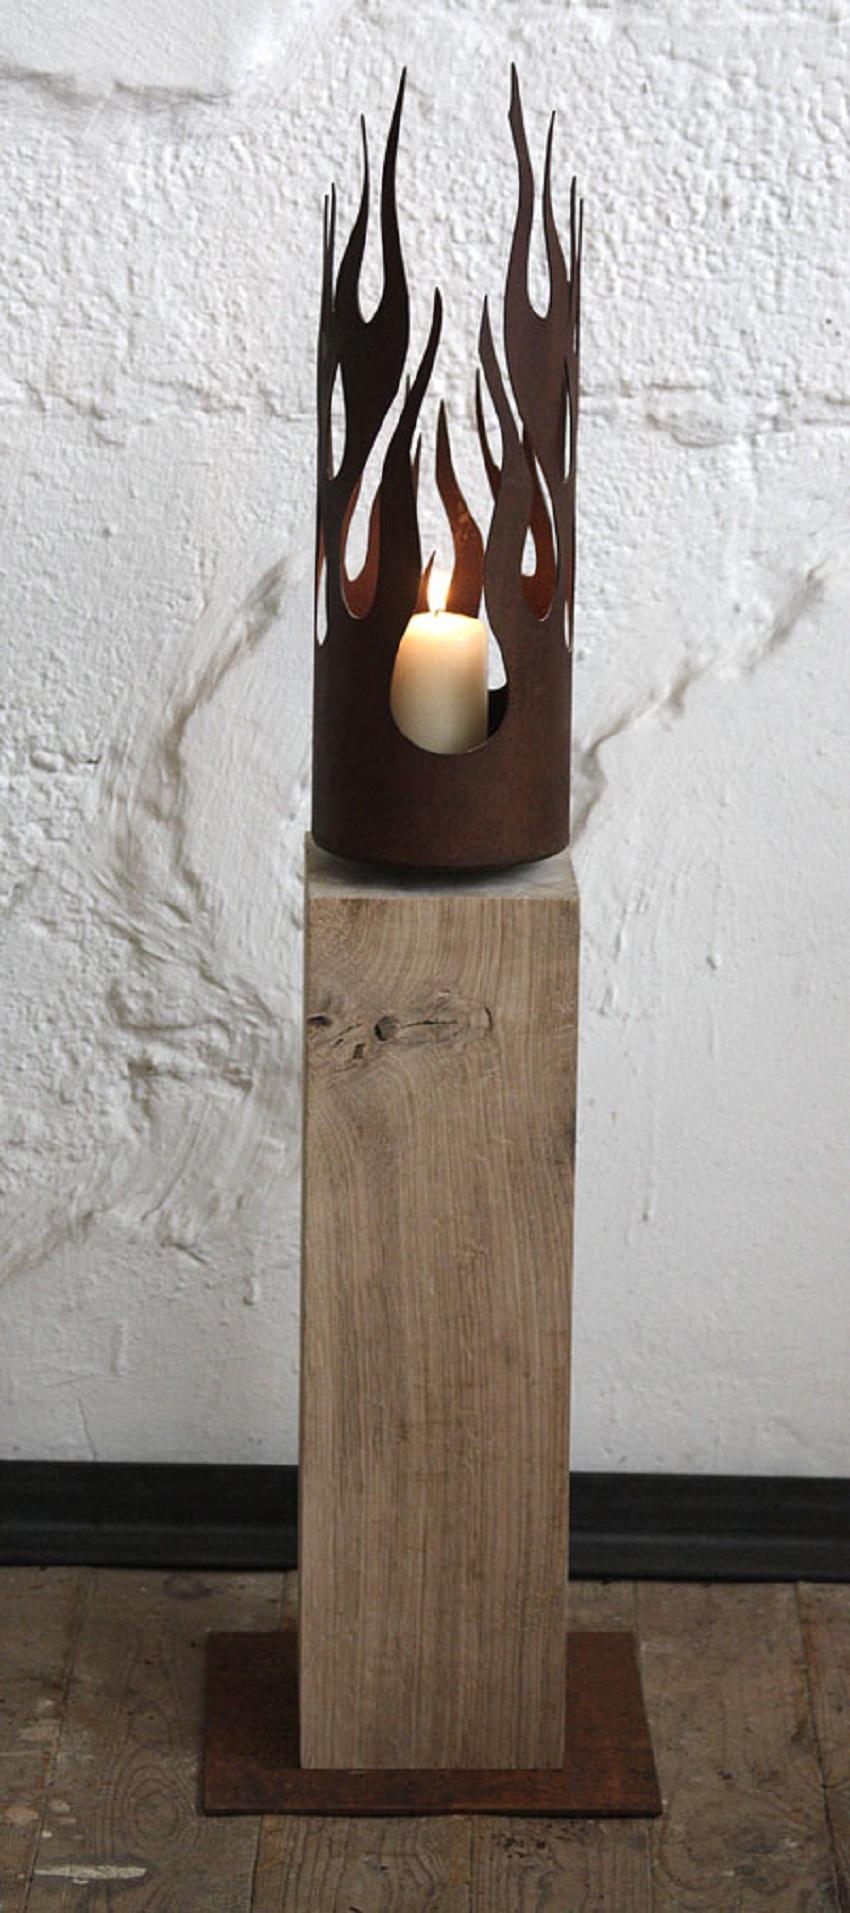 Einzigartiger Kerzenständer - "Flames" auf einem Sockel aus natürlicher Eiche - Mittlere Höhe – Mixed Media Art von Stefan Traloc